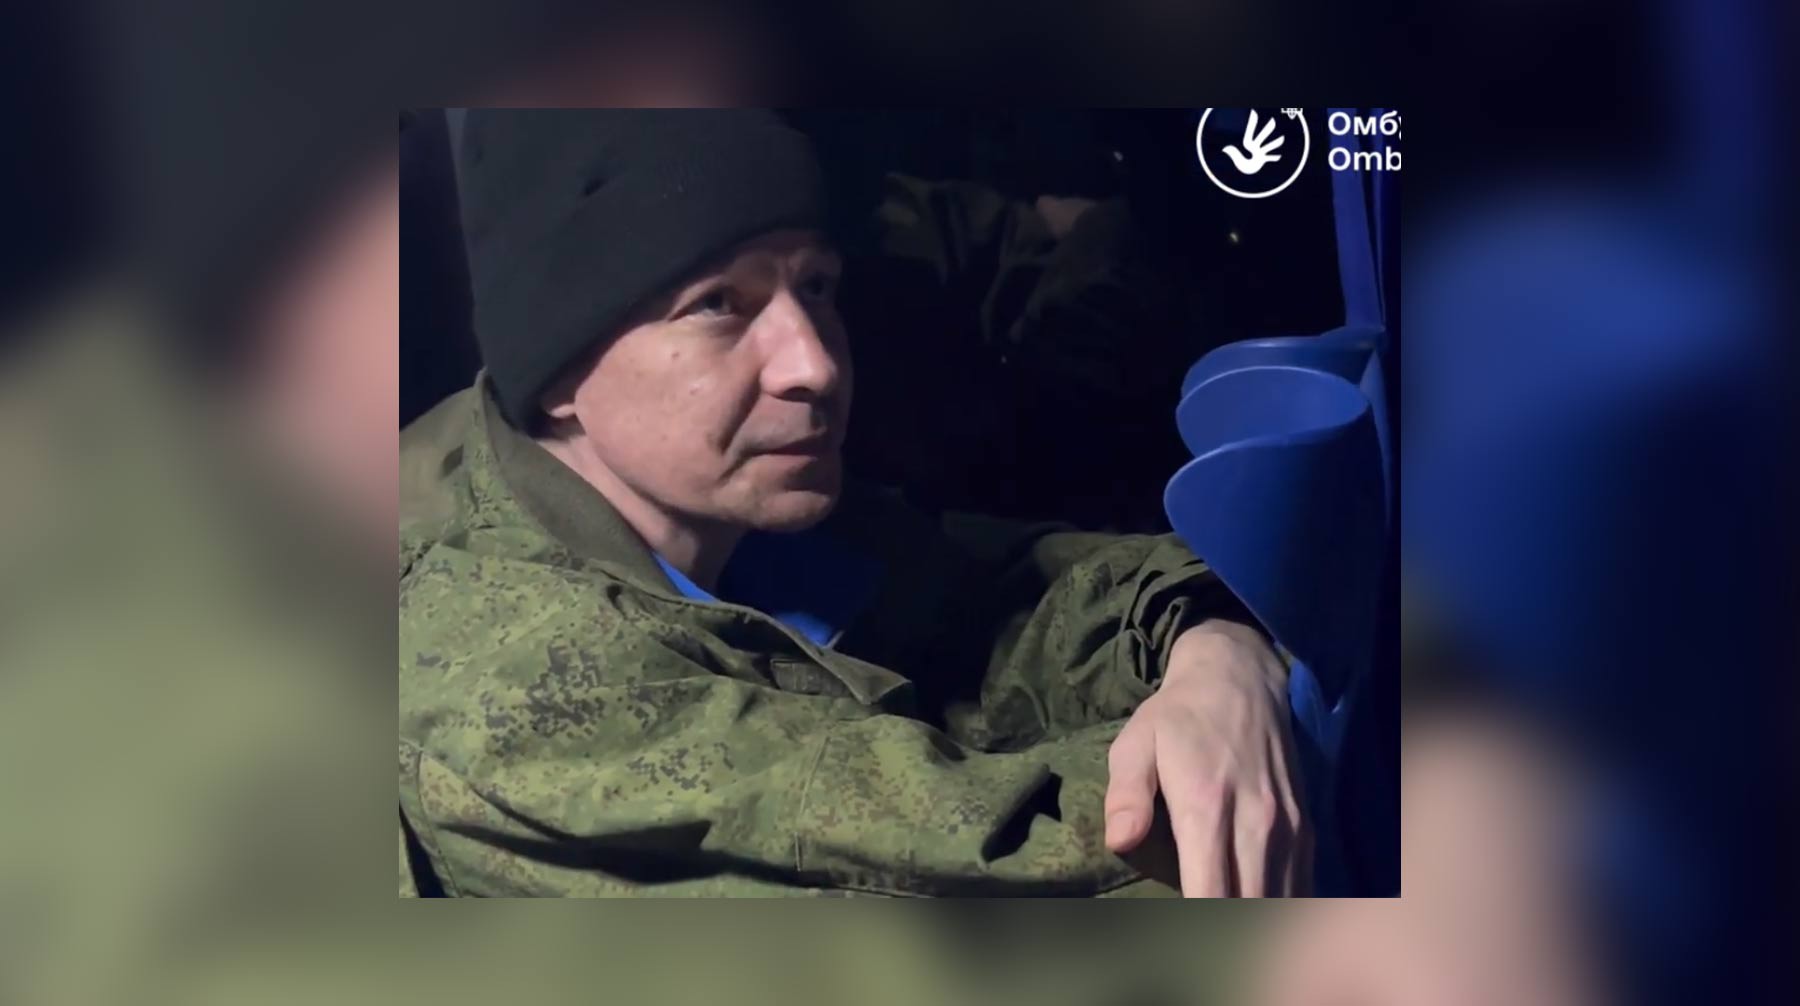 Павла Чертенкова везут на обмен военнопленными с российской стороной